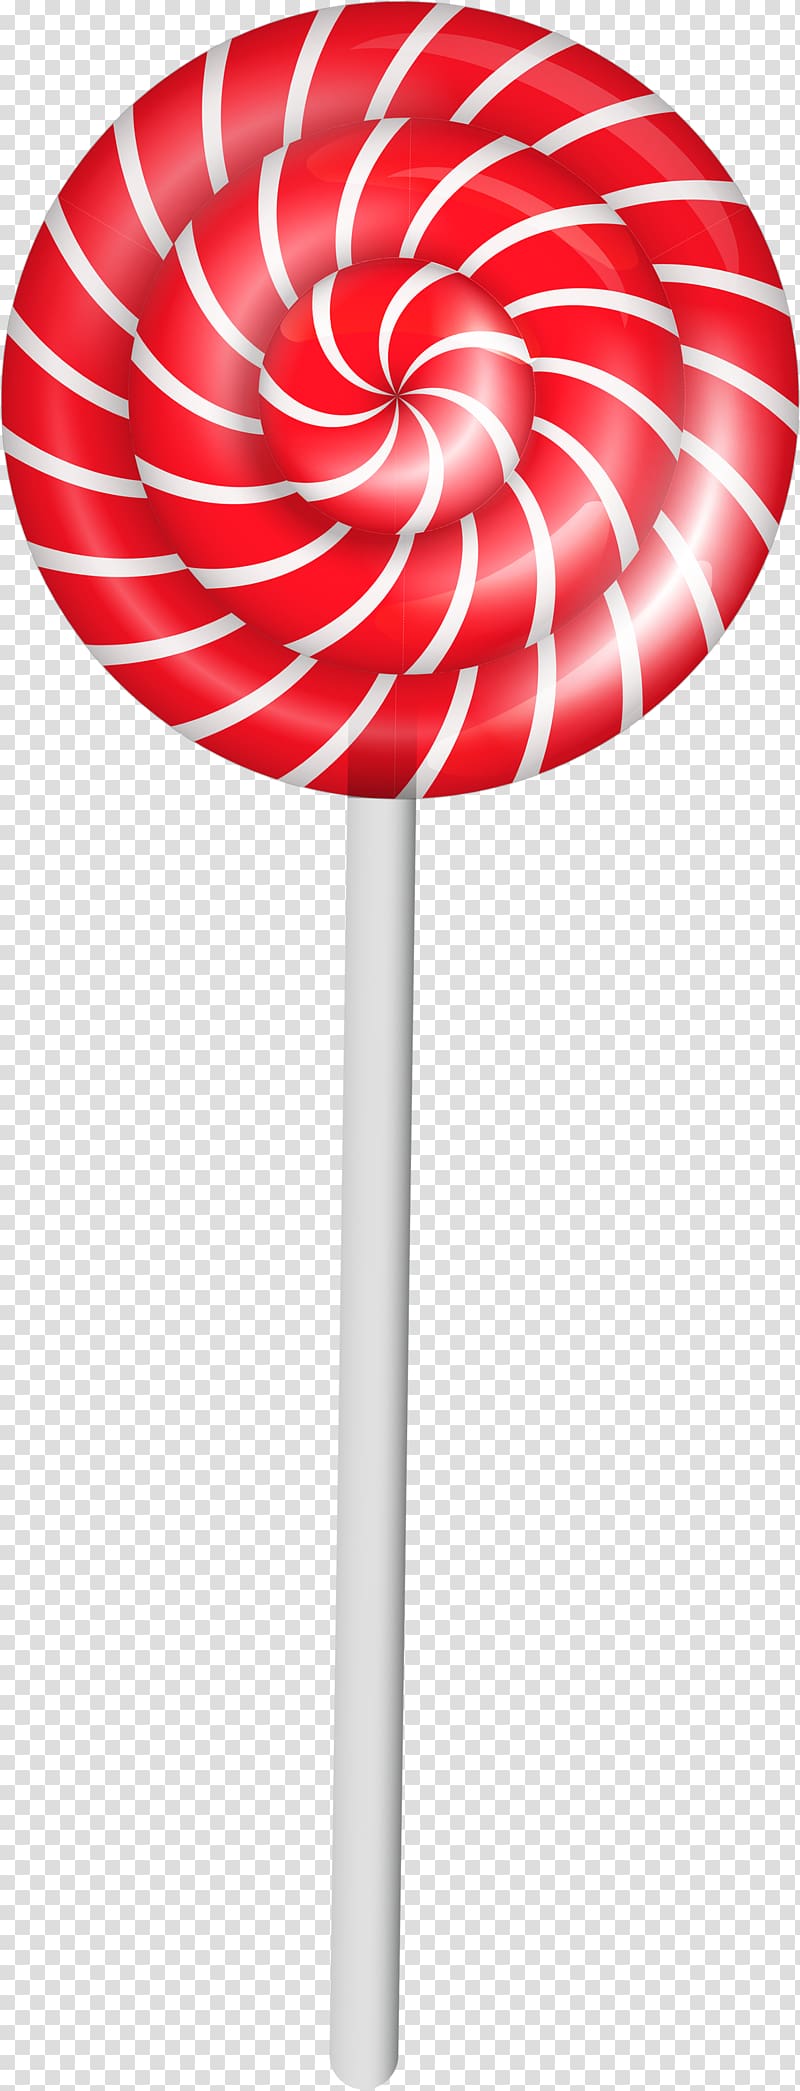 Lollipop Candy cane , Lollipop transparent background PNG clipart